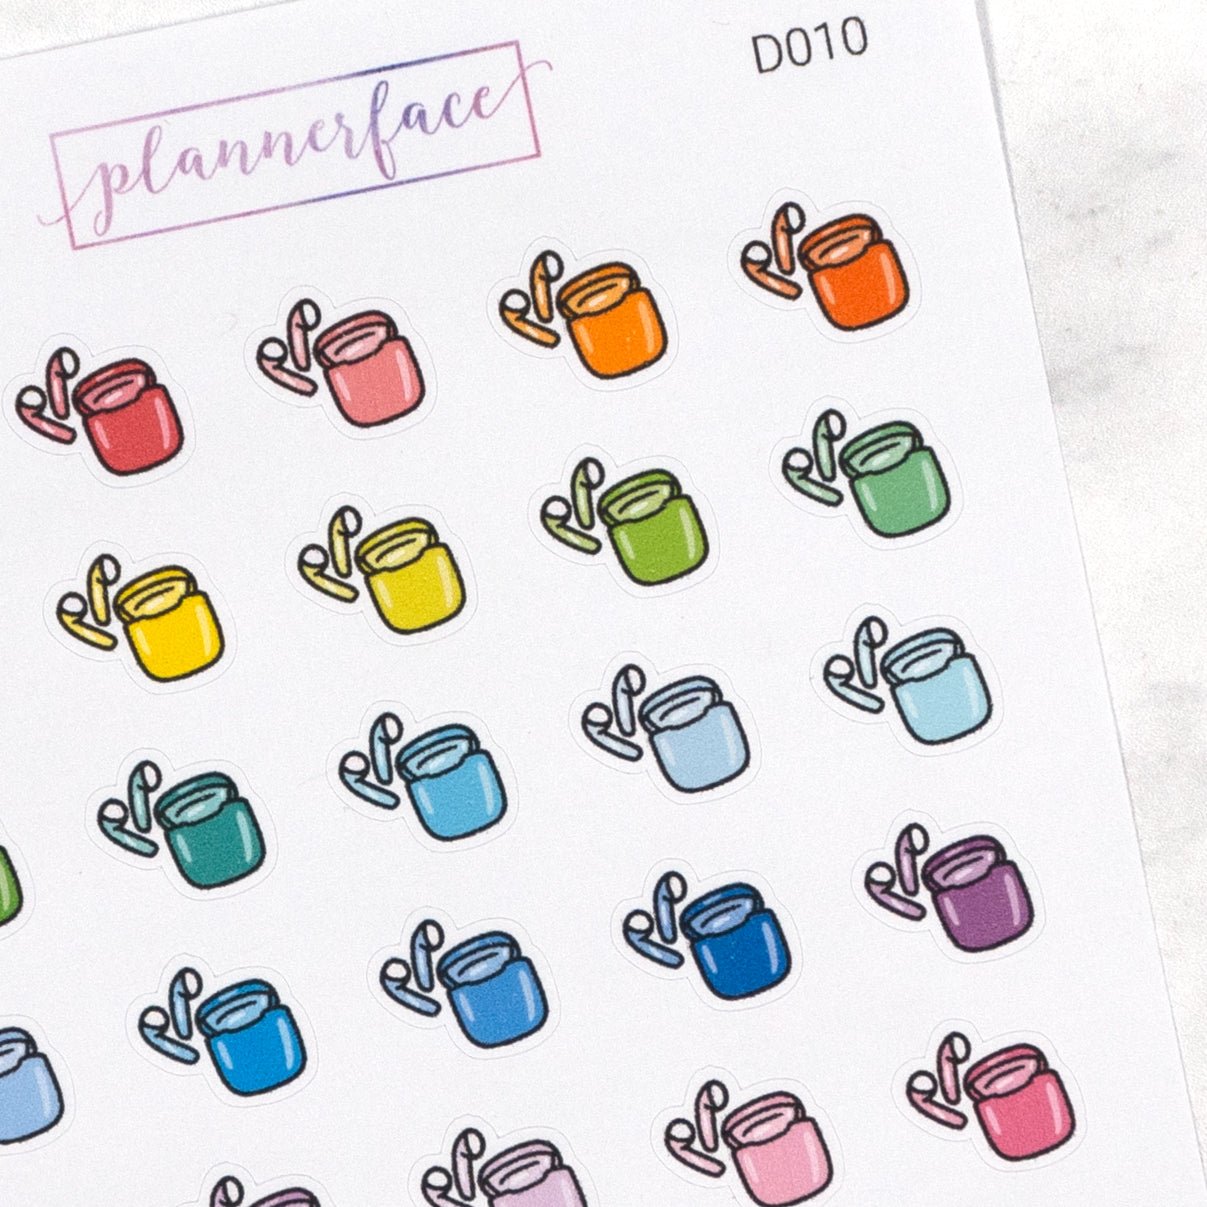 Earphones Multicolour Doodles by Plannerface